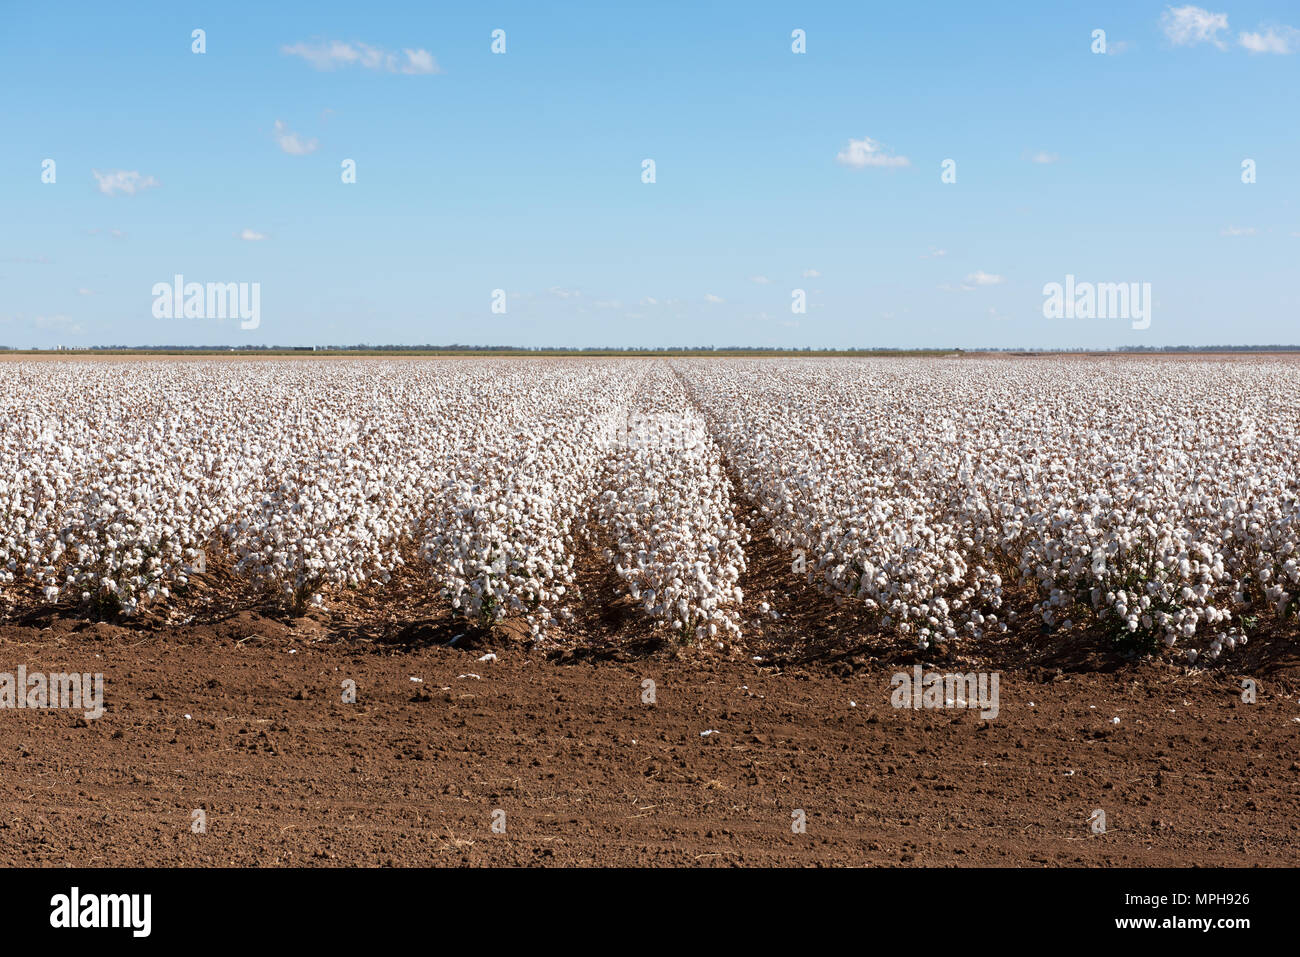 Prêt pour la récolte du coton. Capturé près de Warren dans le NSW, Australie Banque D'Images